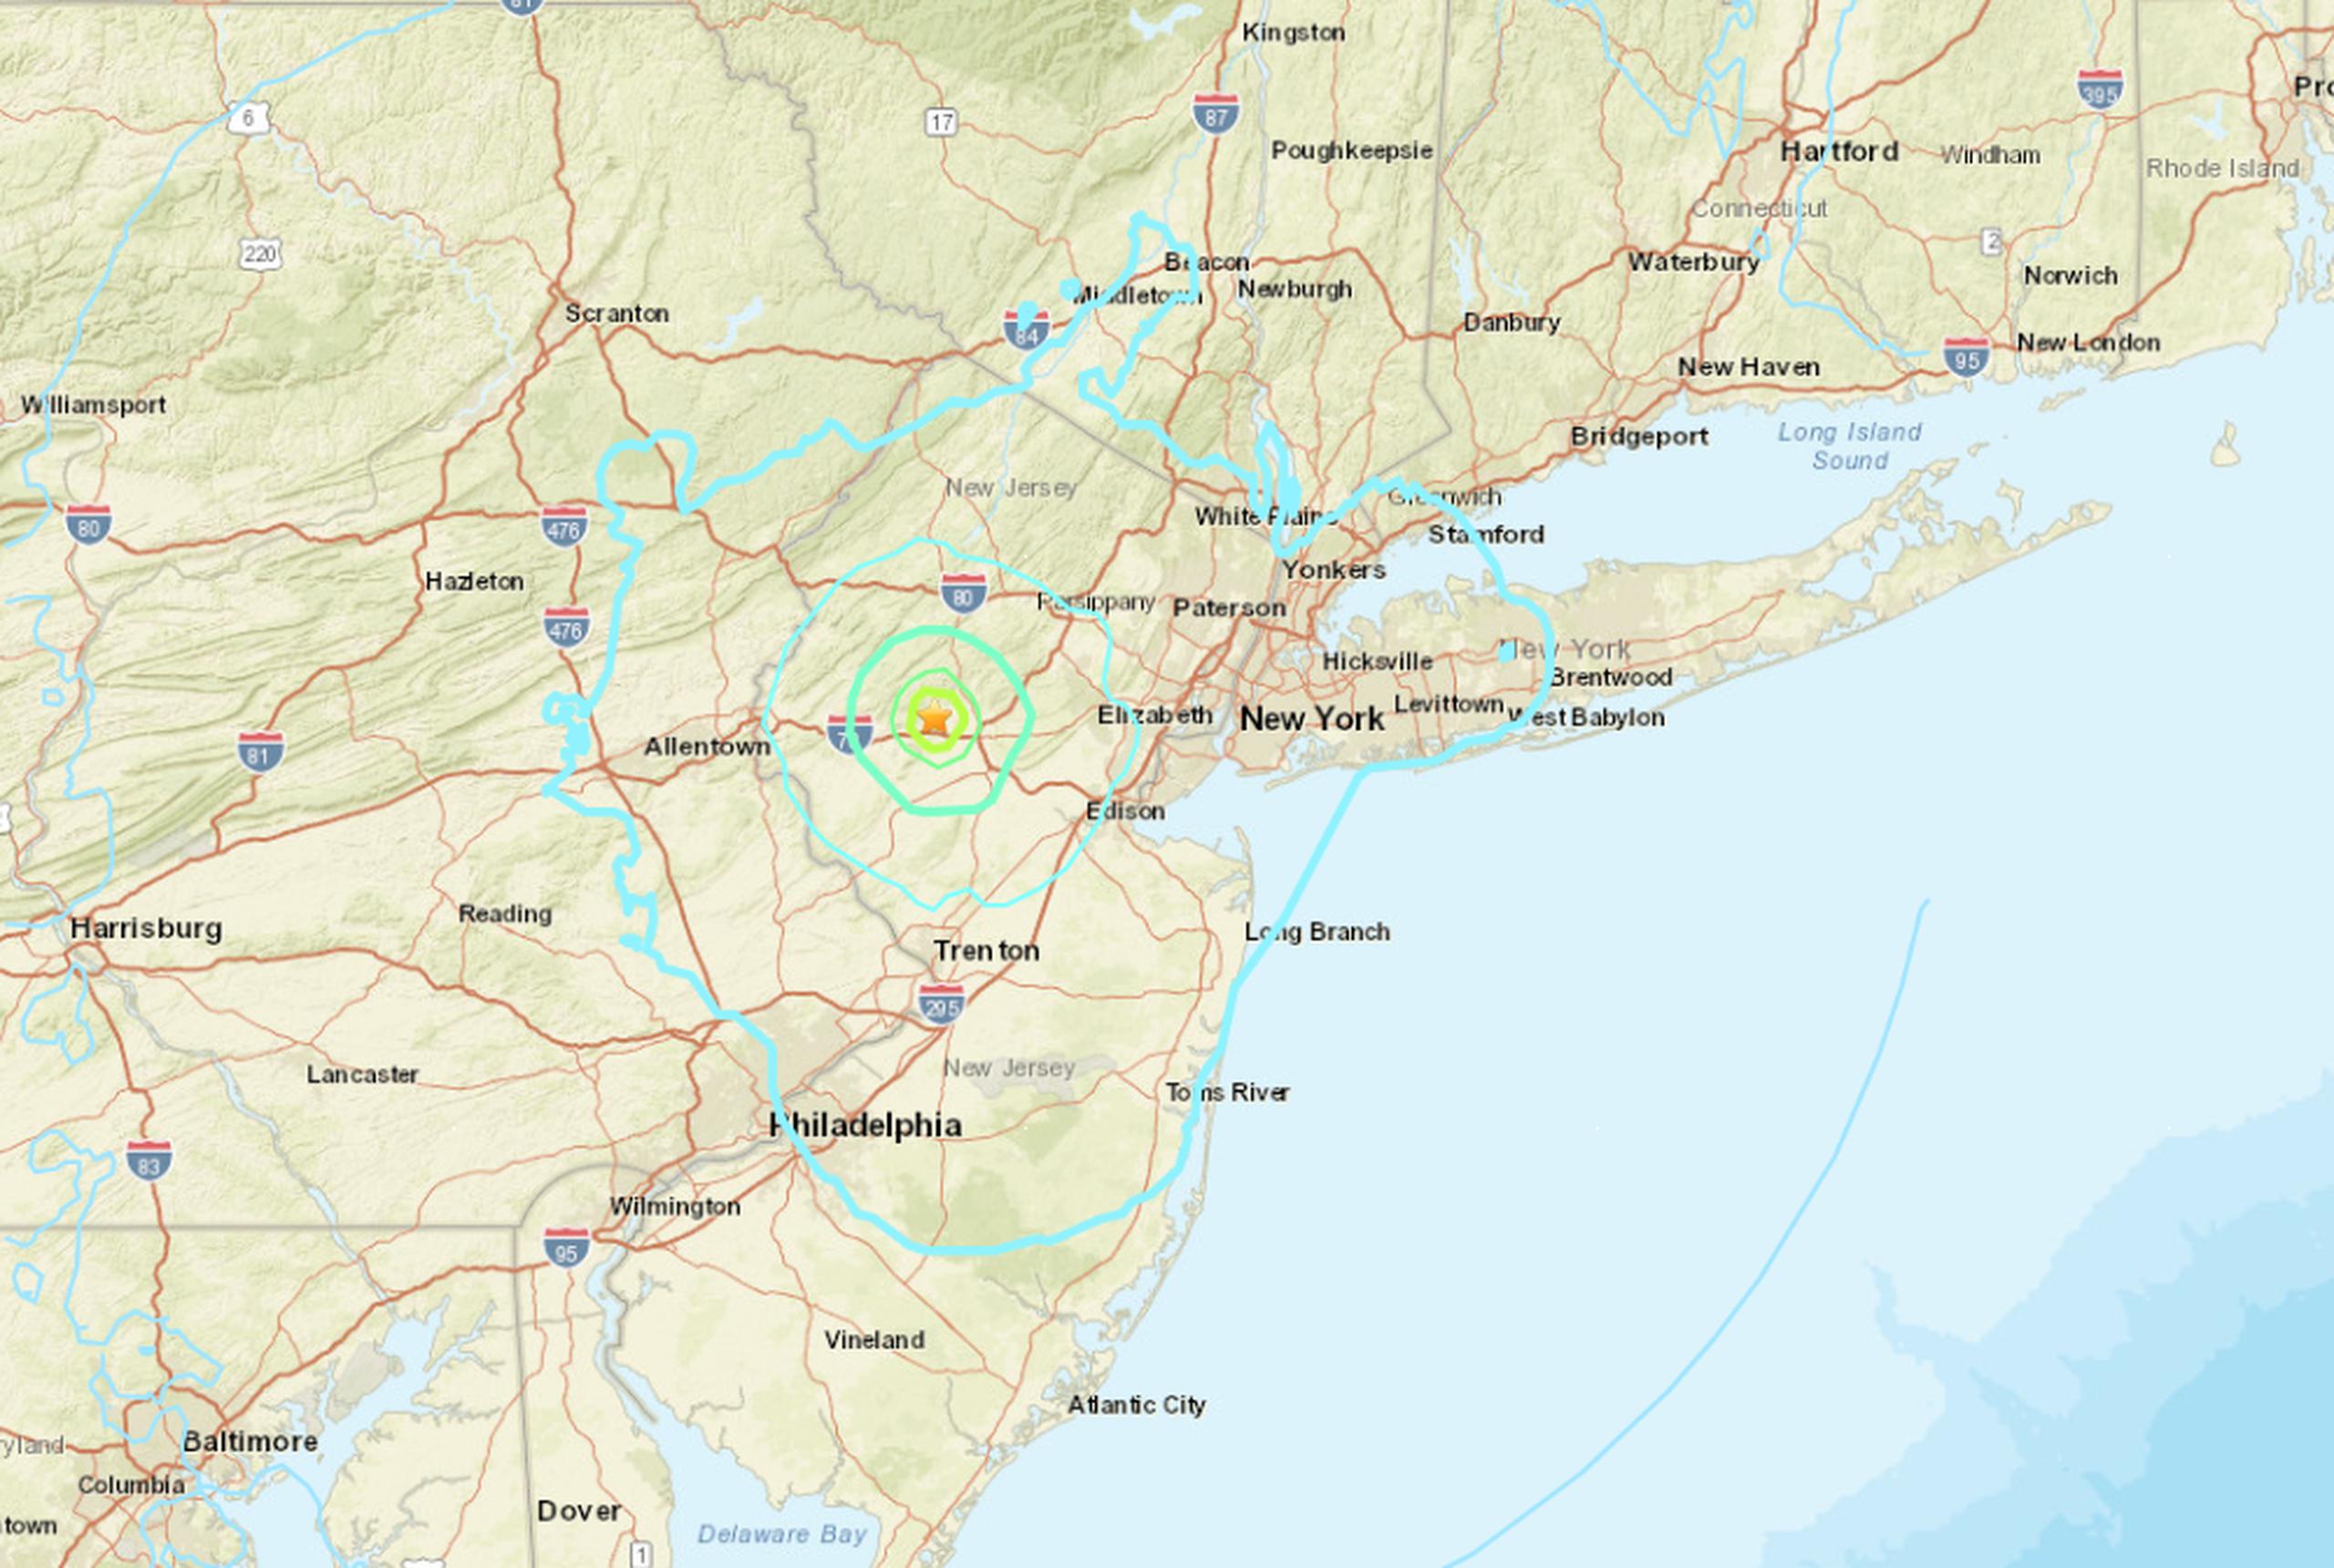 El epicentro del terremoto fue en Lebanon, Nueva Jersey.